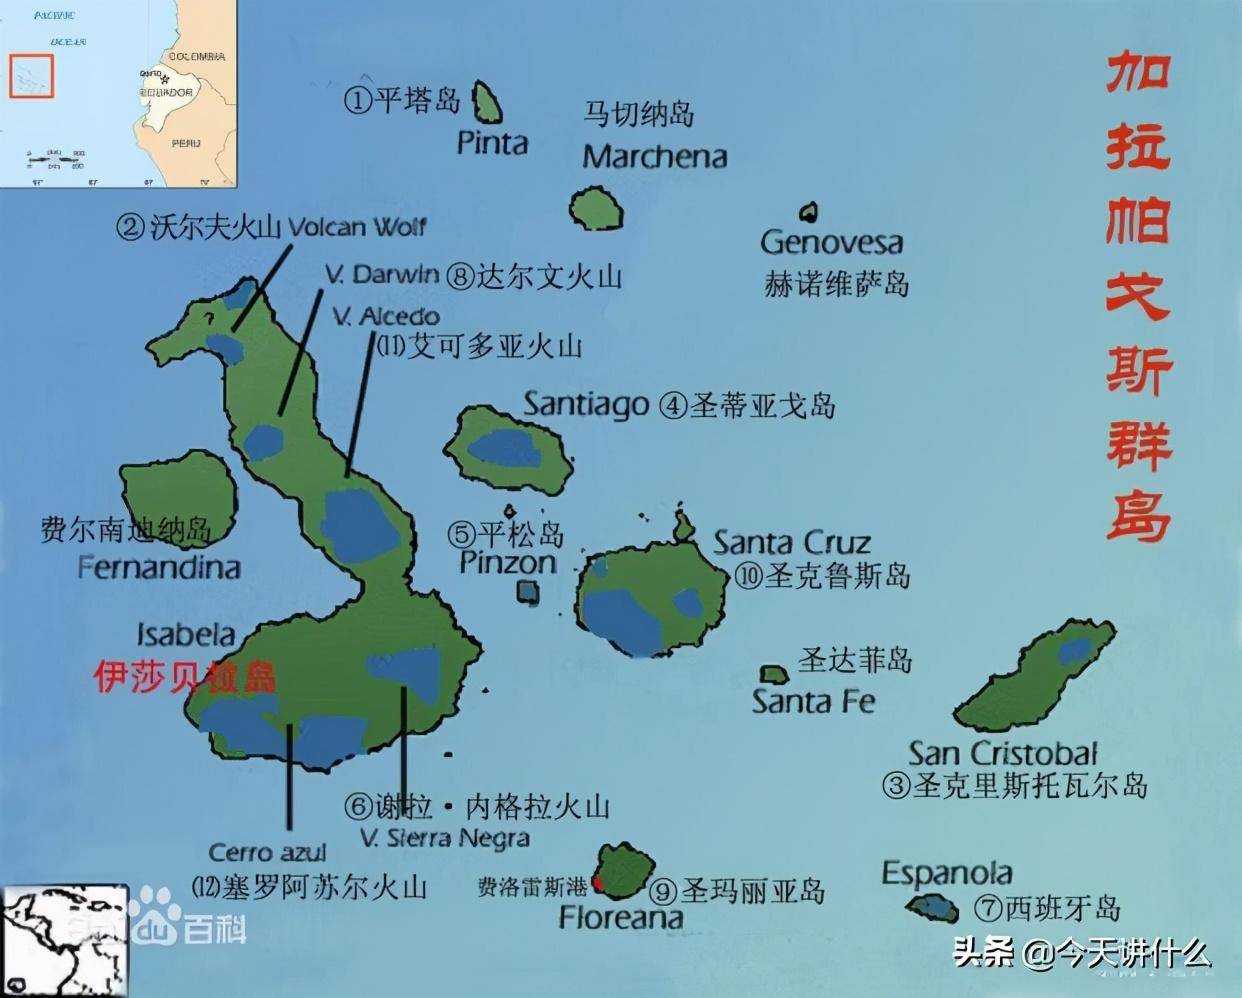 加拉帕戈斯群岛位置图片